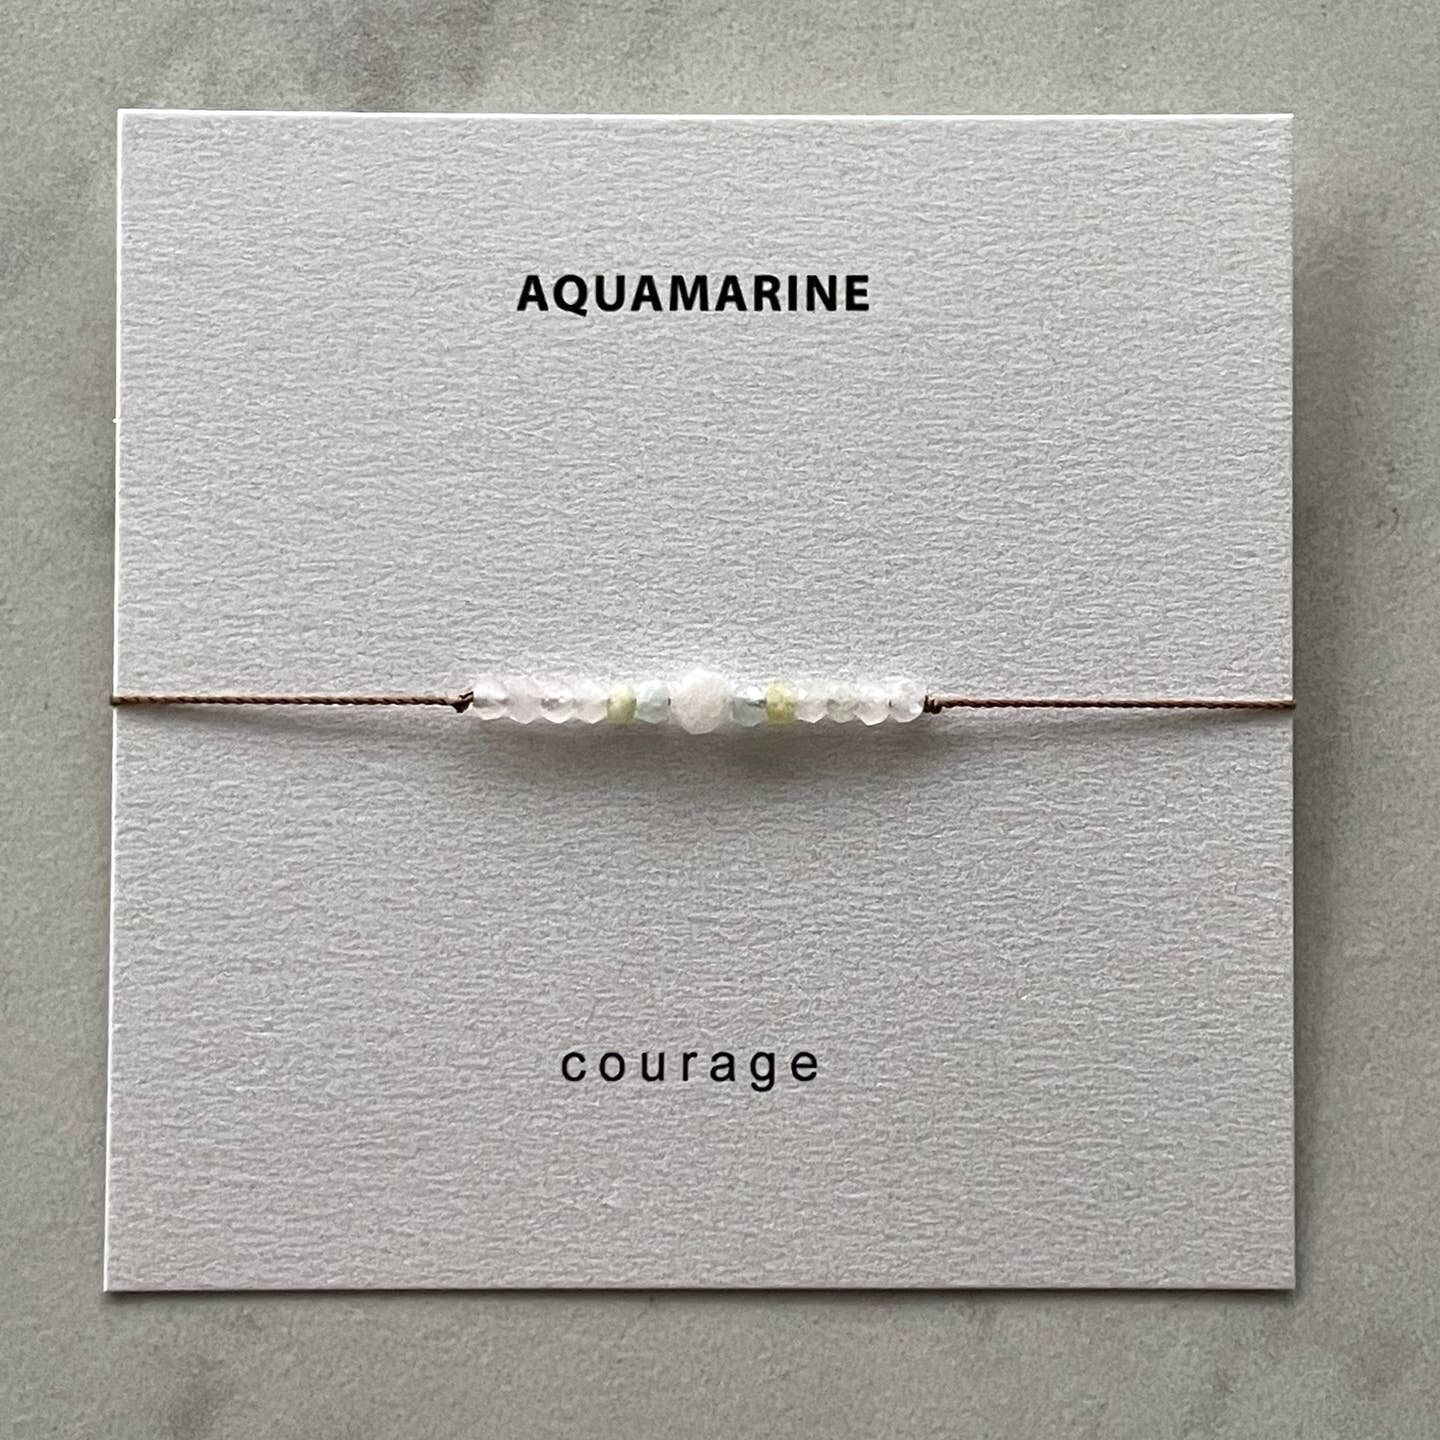 Aquamarine Morganite Bracelet - Courage